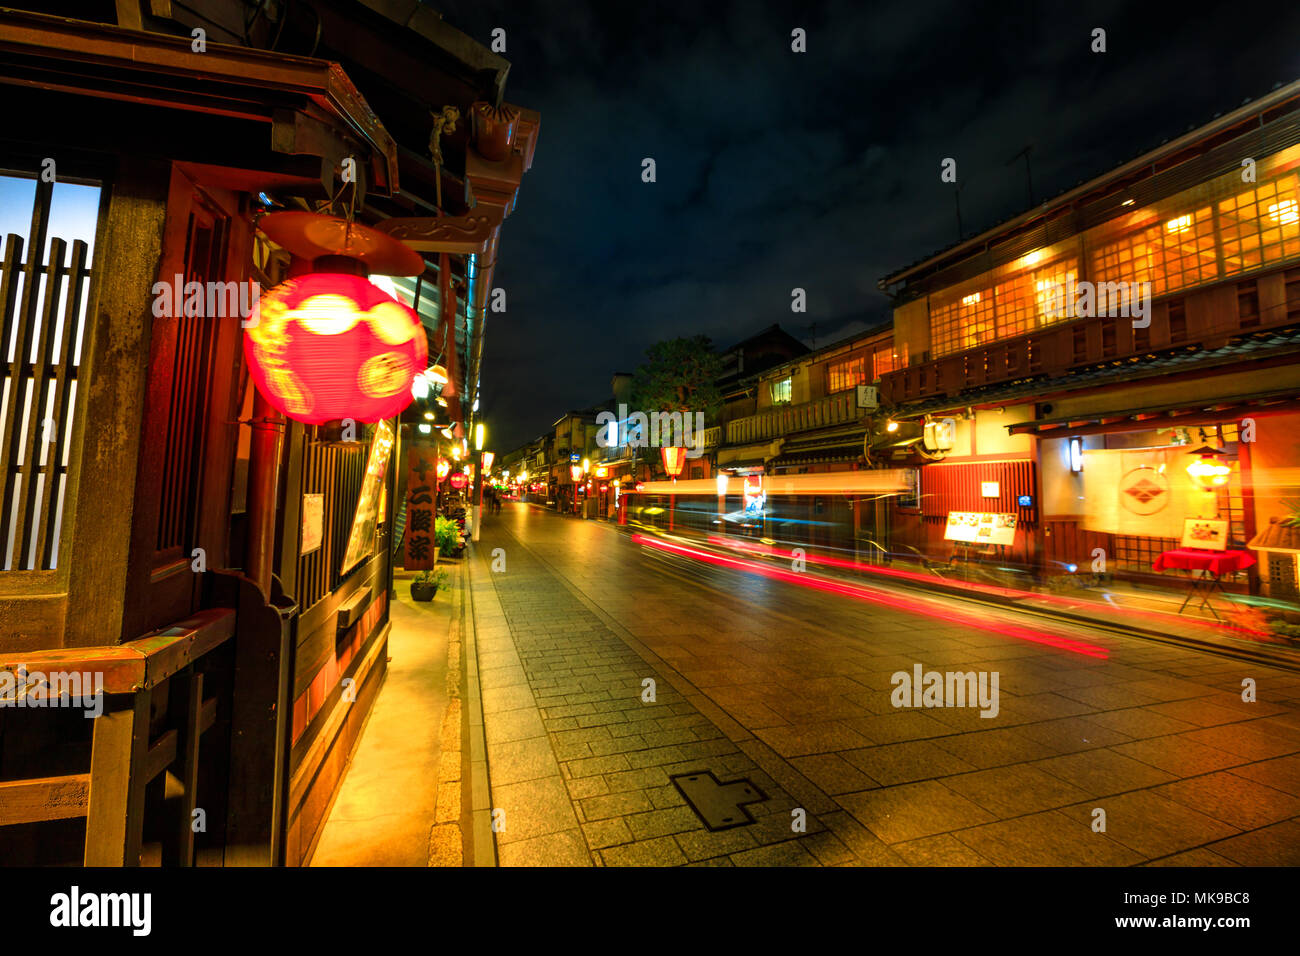 Kyoto, Japan - 24 April 2017: Licht Trail durch die Nacht in Gion Kobu Bezirk mit typischen kaiseki Restaurant. Gion ist von Kyoto berühmteste Geisha District, Hanamachi, in Kyoto, Japan. Stockfoto